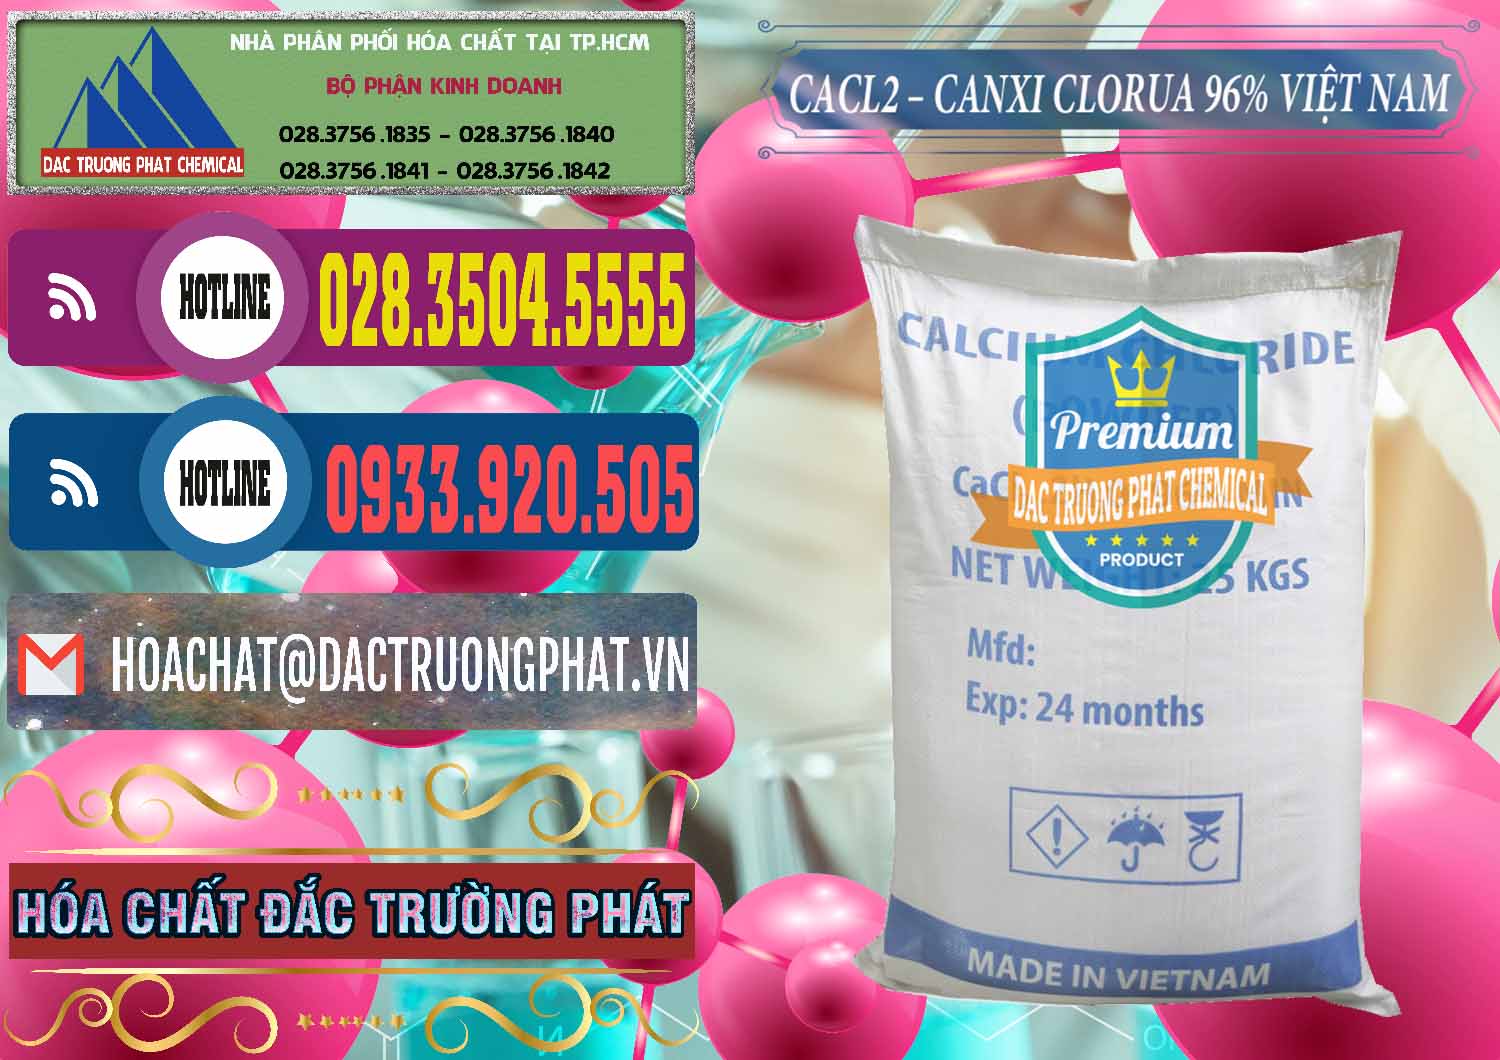 Công ty cung ứng ( bán ) CaCl2 – Canxi Clorua 96% Việt Nam - 0236 - Nơi bán _ cung ứng hóa chất tại TP.HCM - muabanhoachat.com.vn